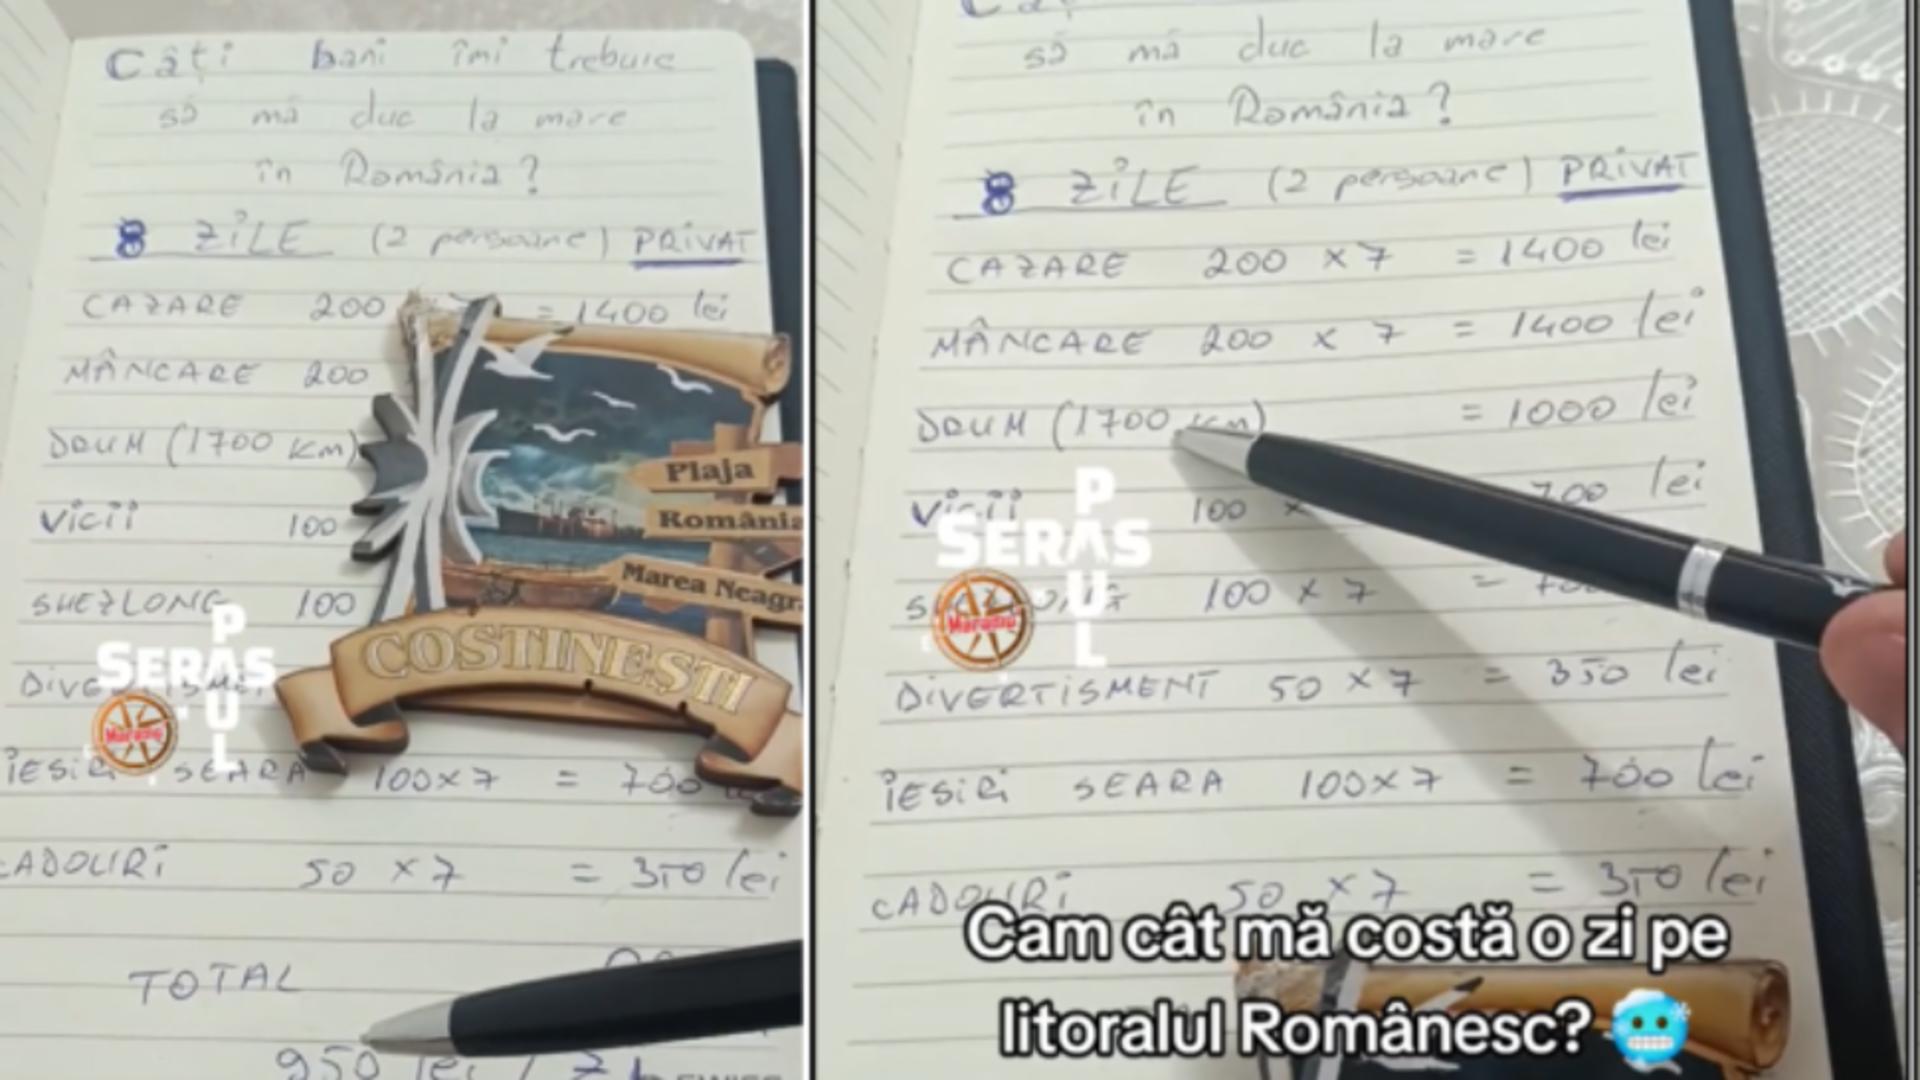 Un român a calculat cât îl costă 8 zile pe litoralul românesc. Foto: TikTok